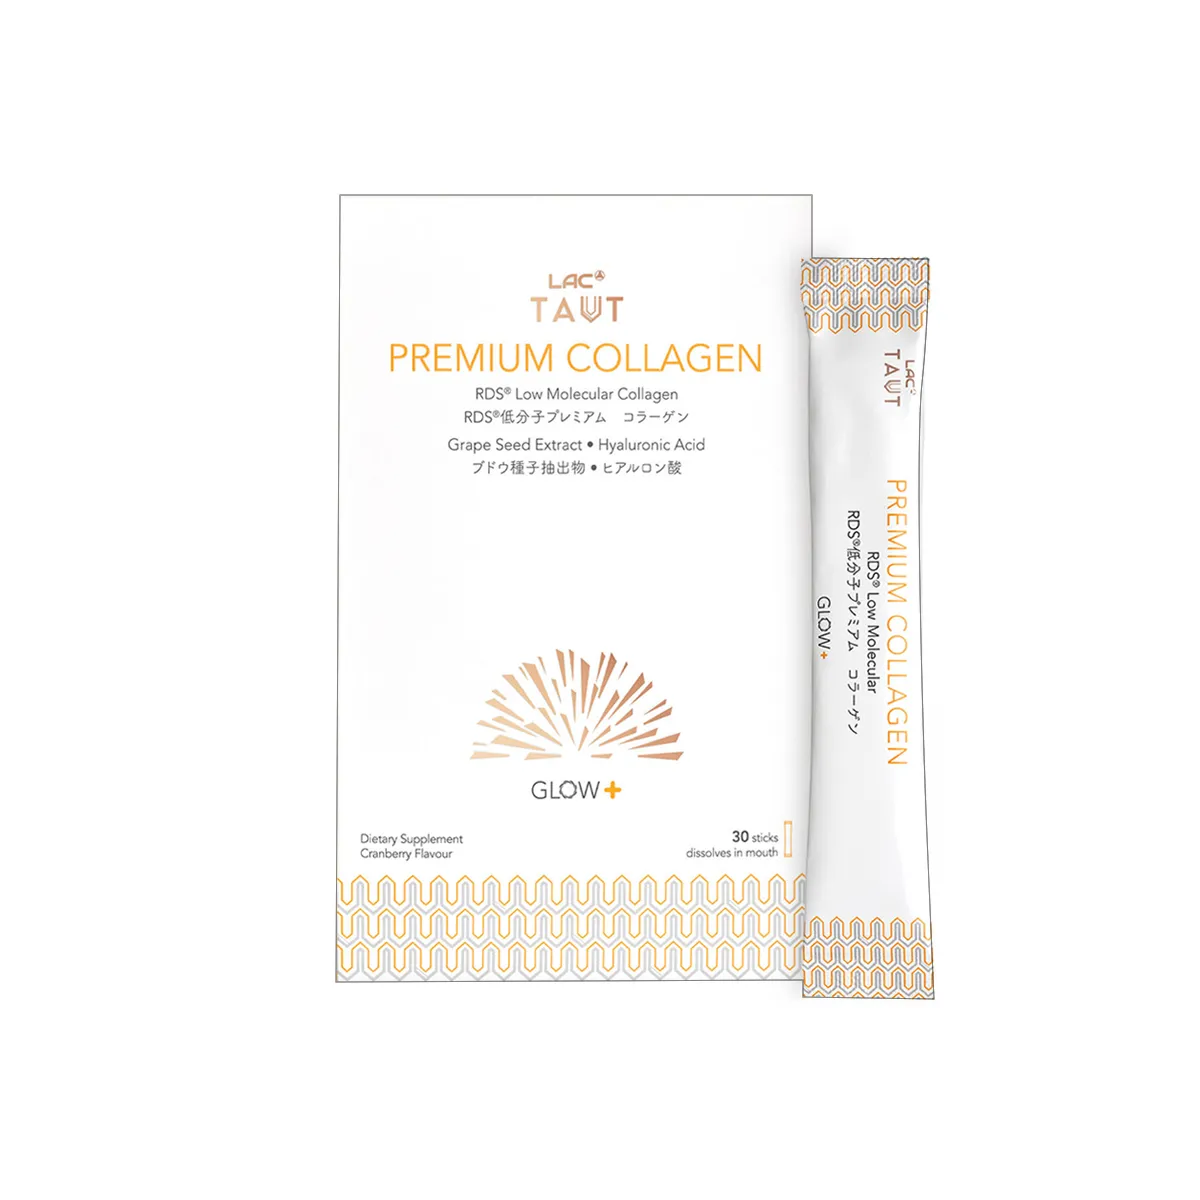 LAC TAUT Radiance Premium Collagen Powder Sticks 30s